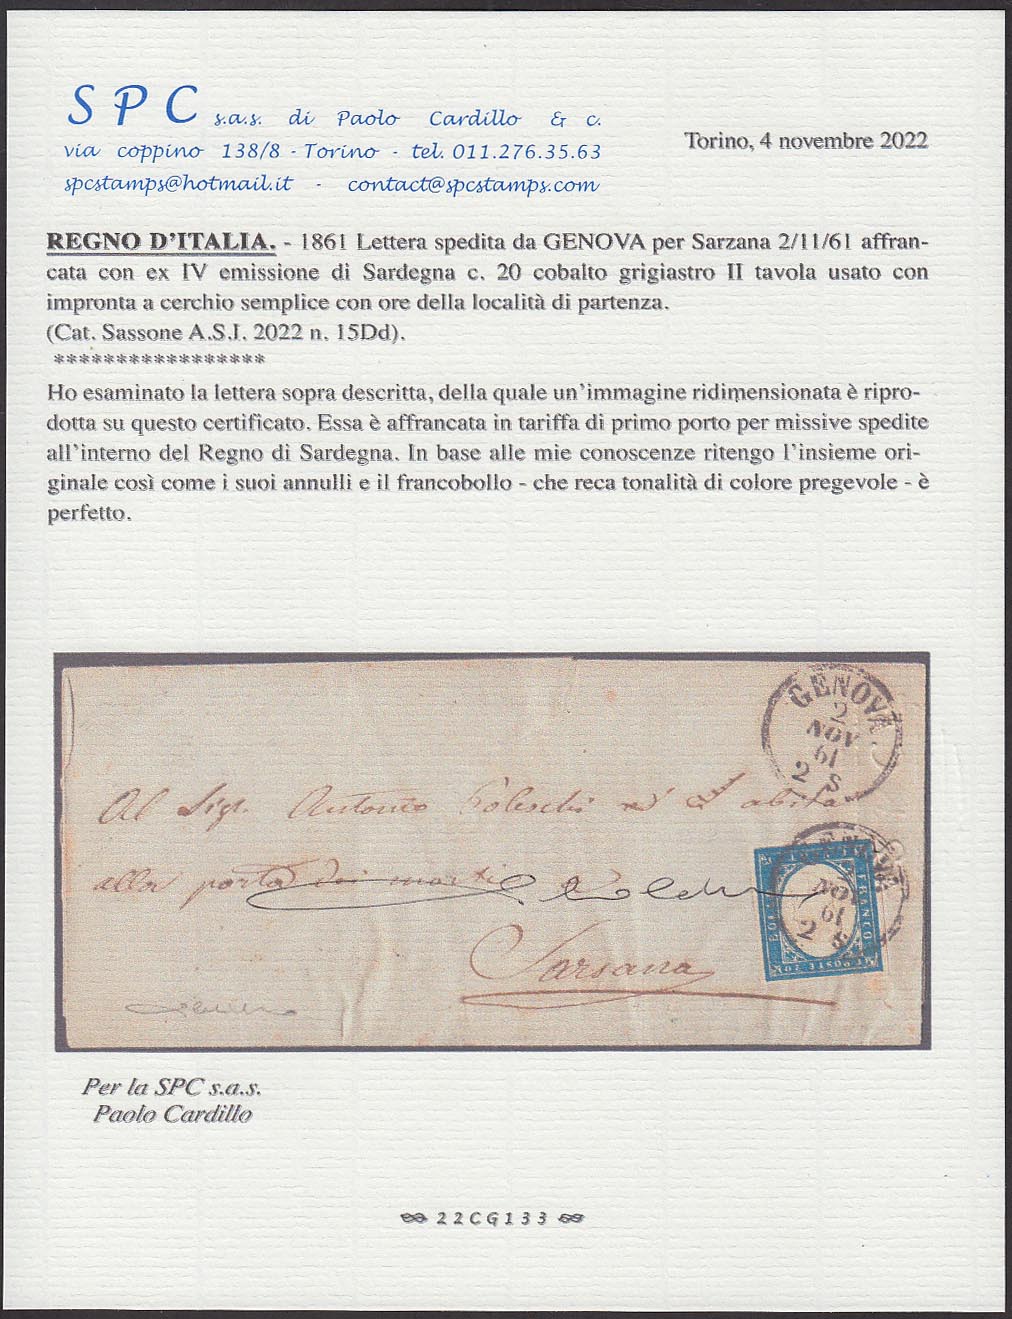 121 - 1861 - IV emissione, c.20 cobalto grigiastro II tavola su lettera da Genova per Sarzana 2/11/61 (15Dd)